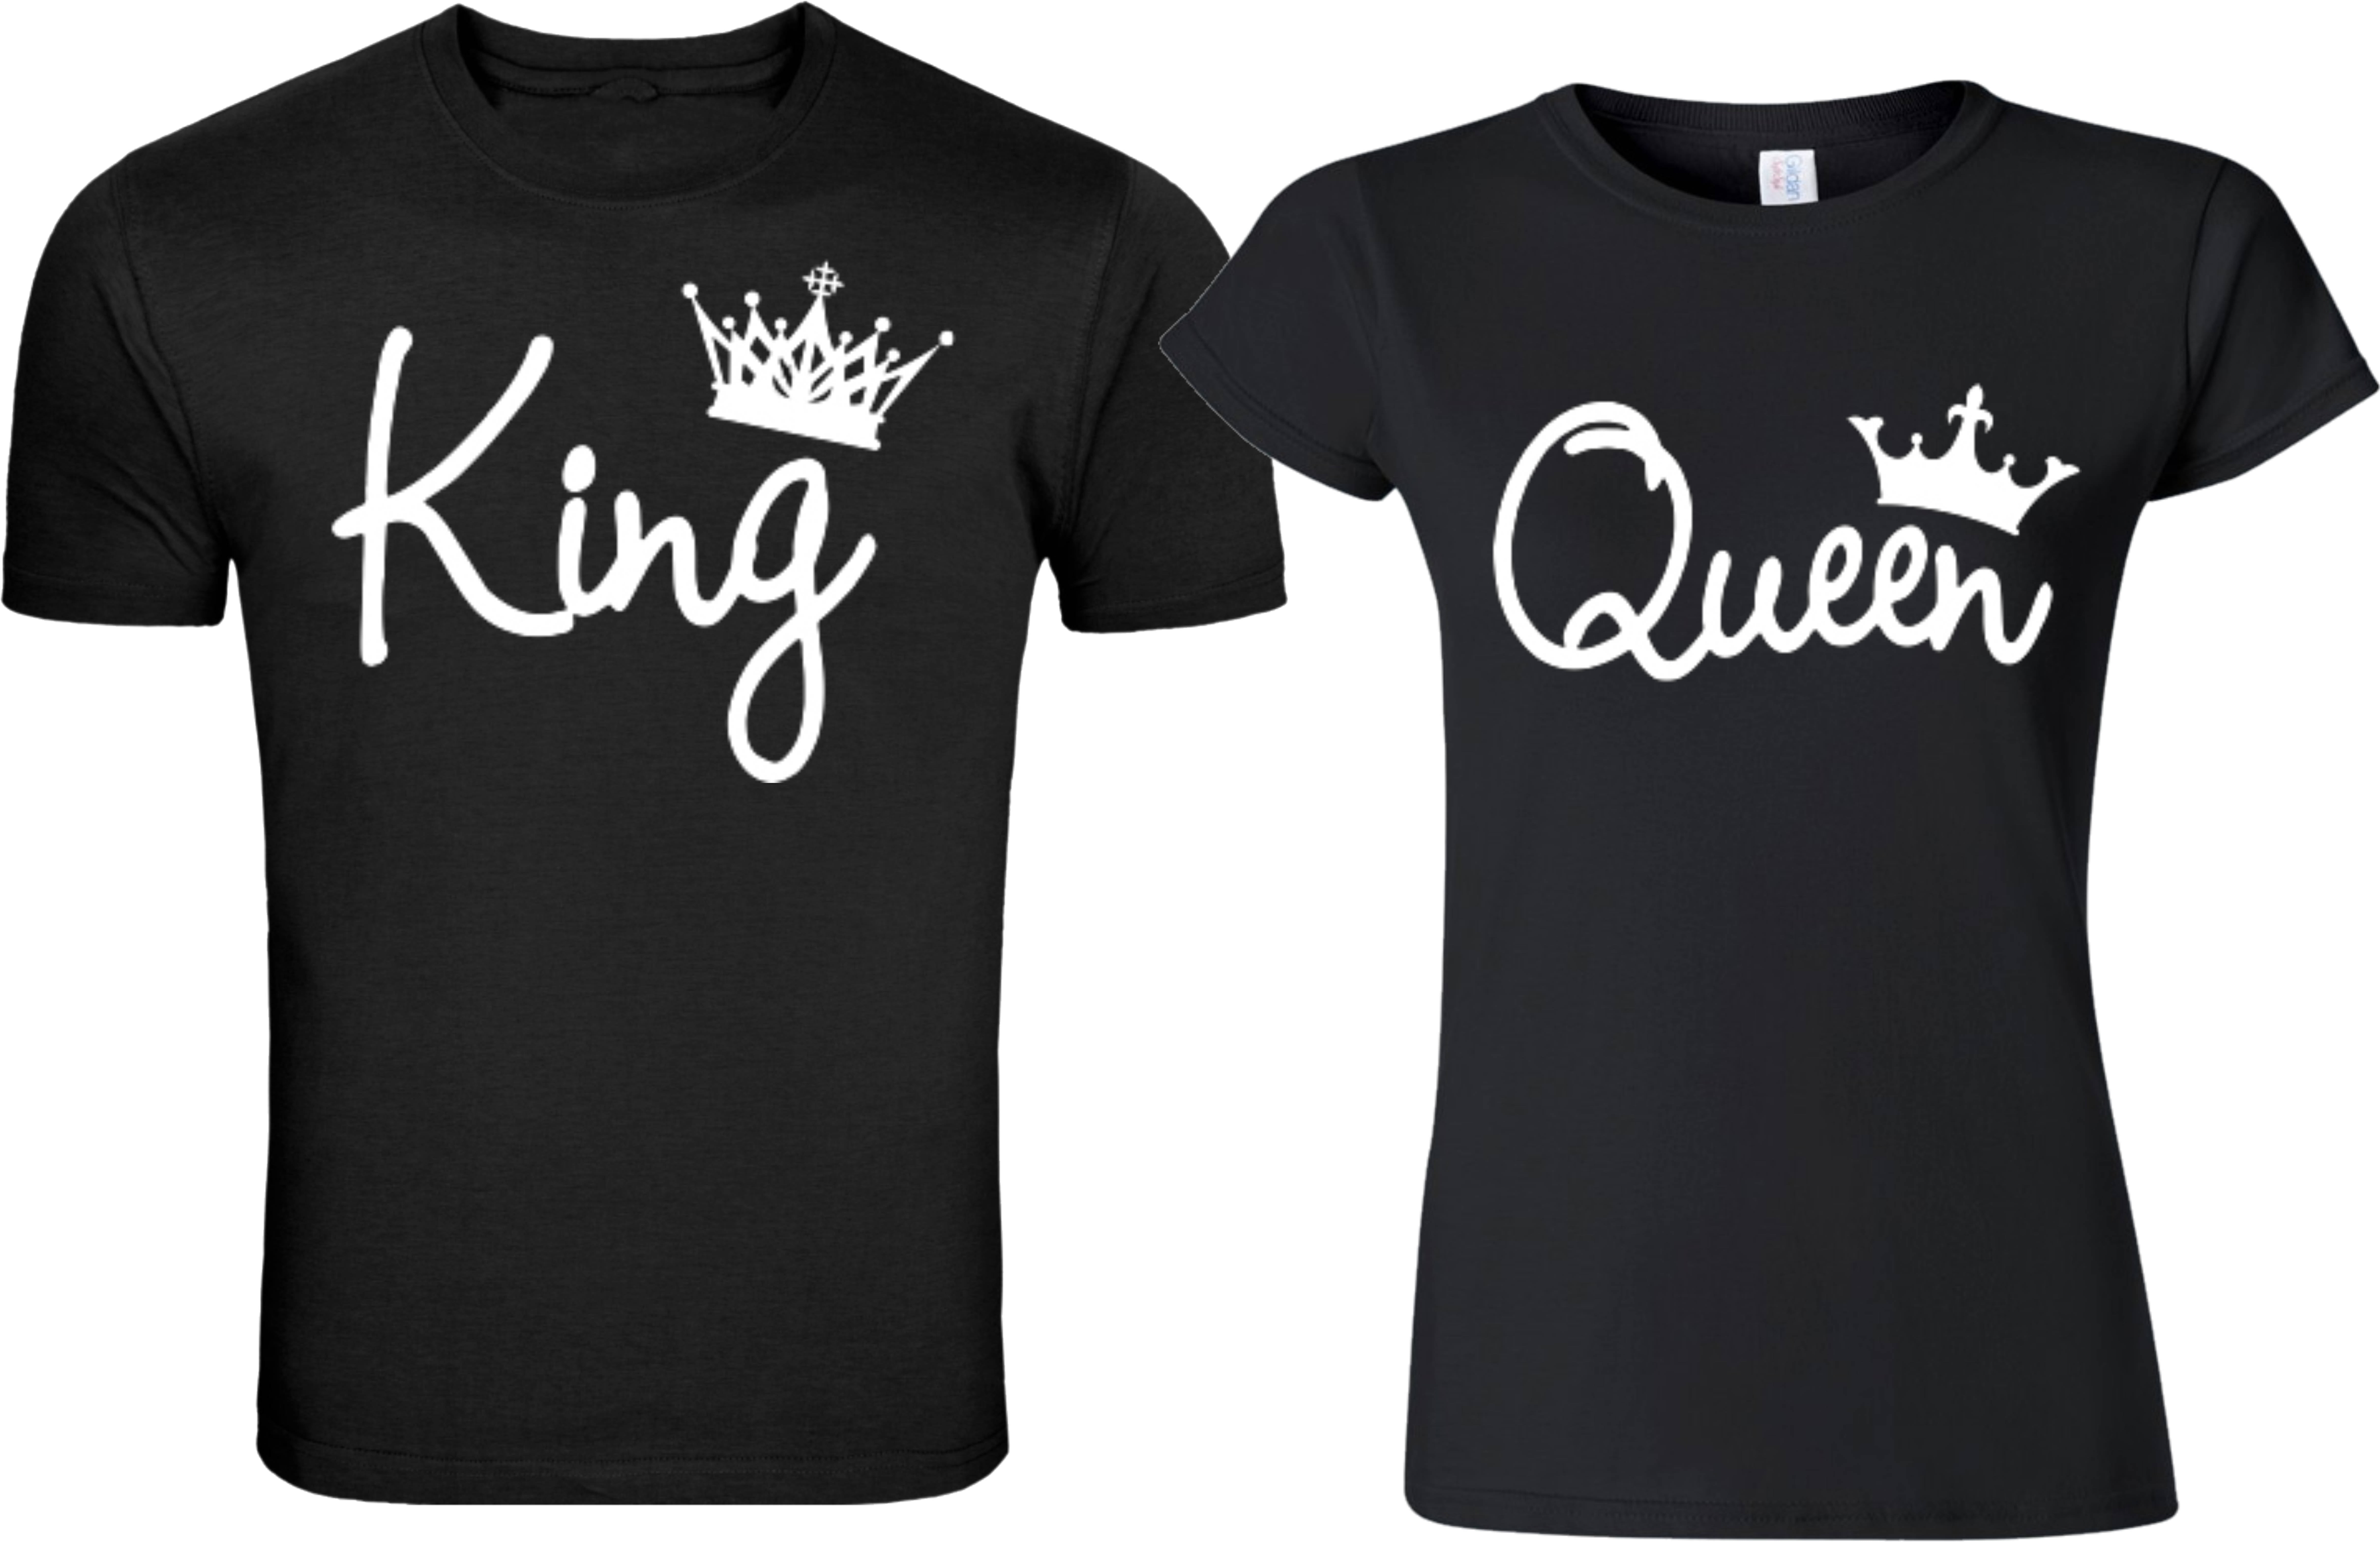 N queen king King N